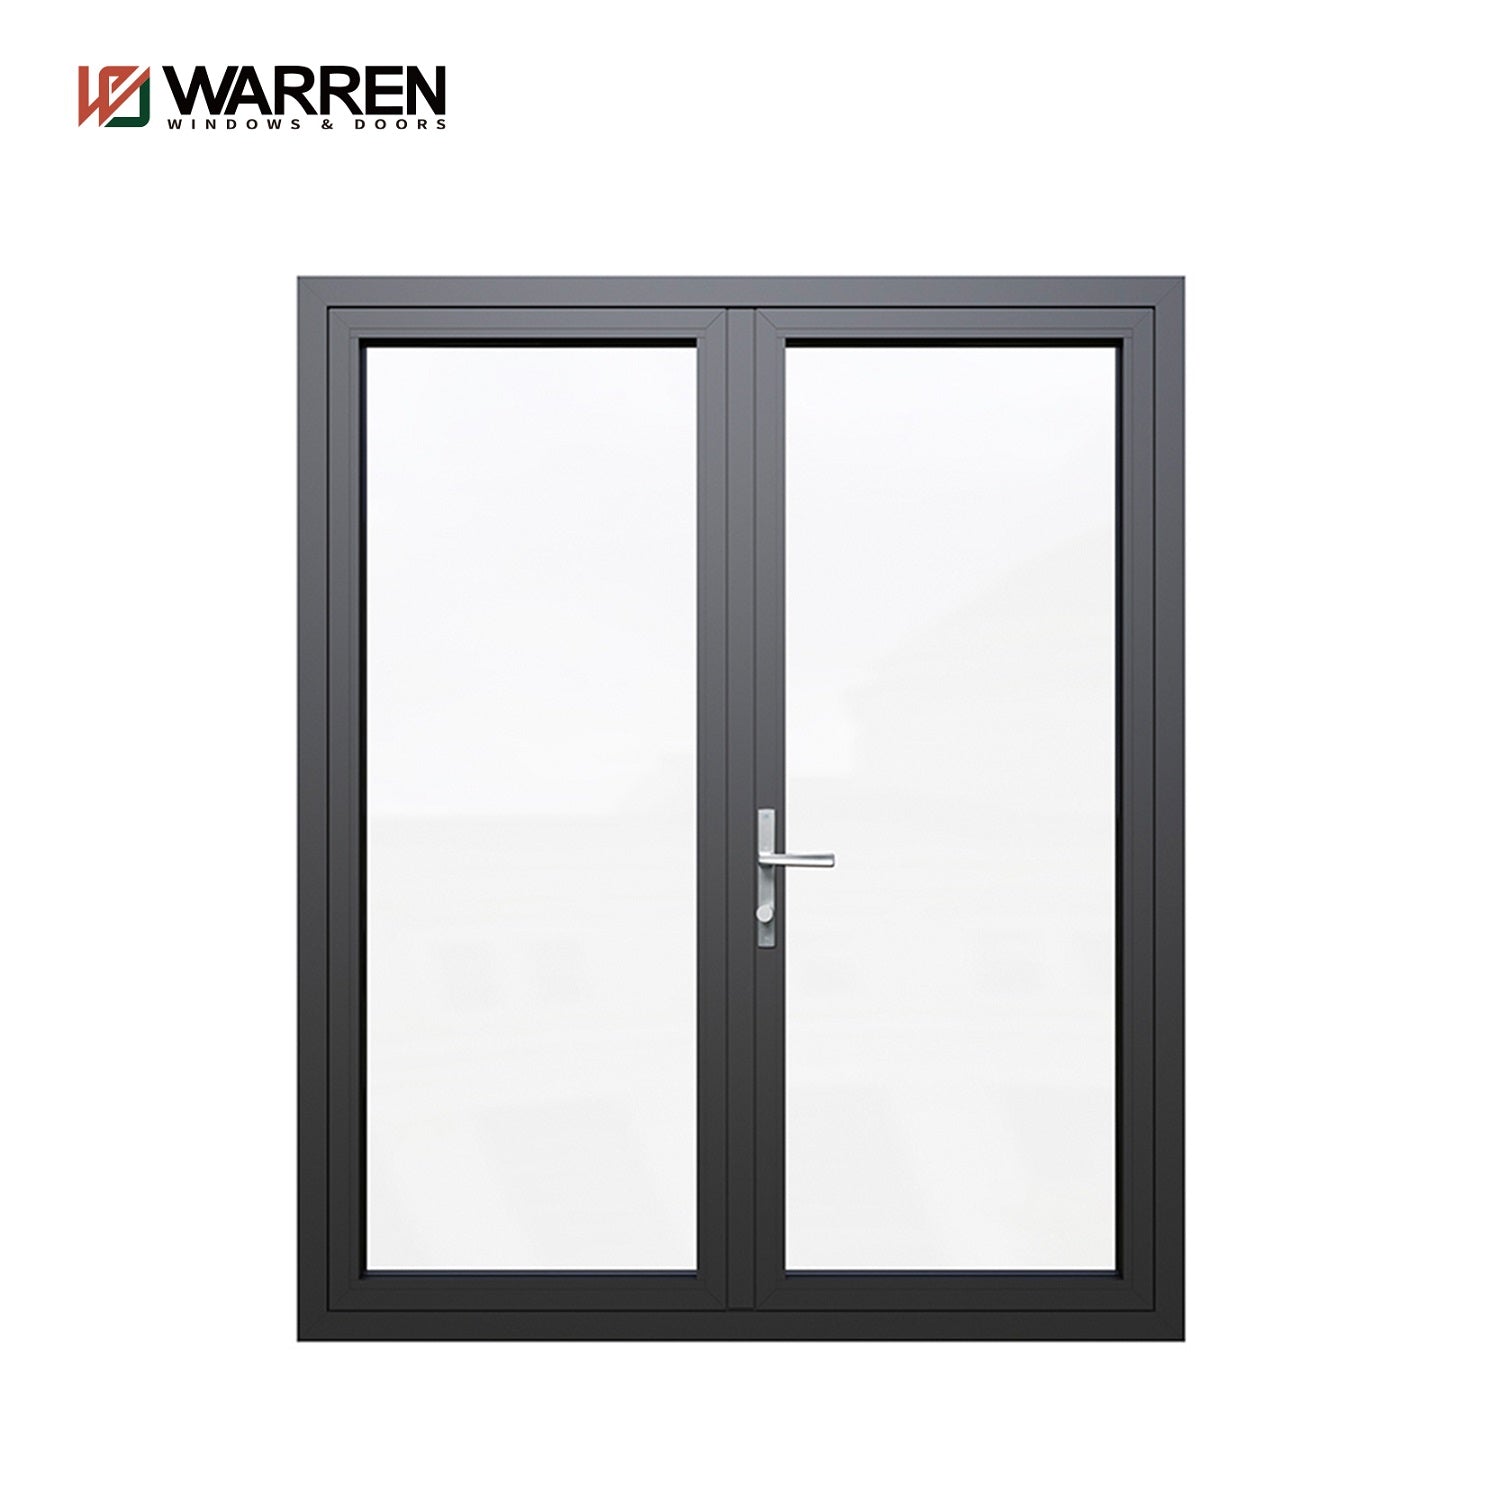 Warren black and red series 112*34 casement door aluminium 6060-T66 double glass with 3mm factory sale